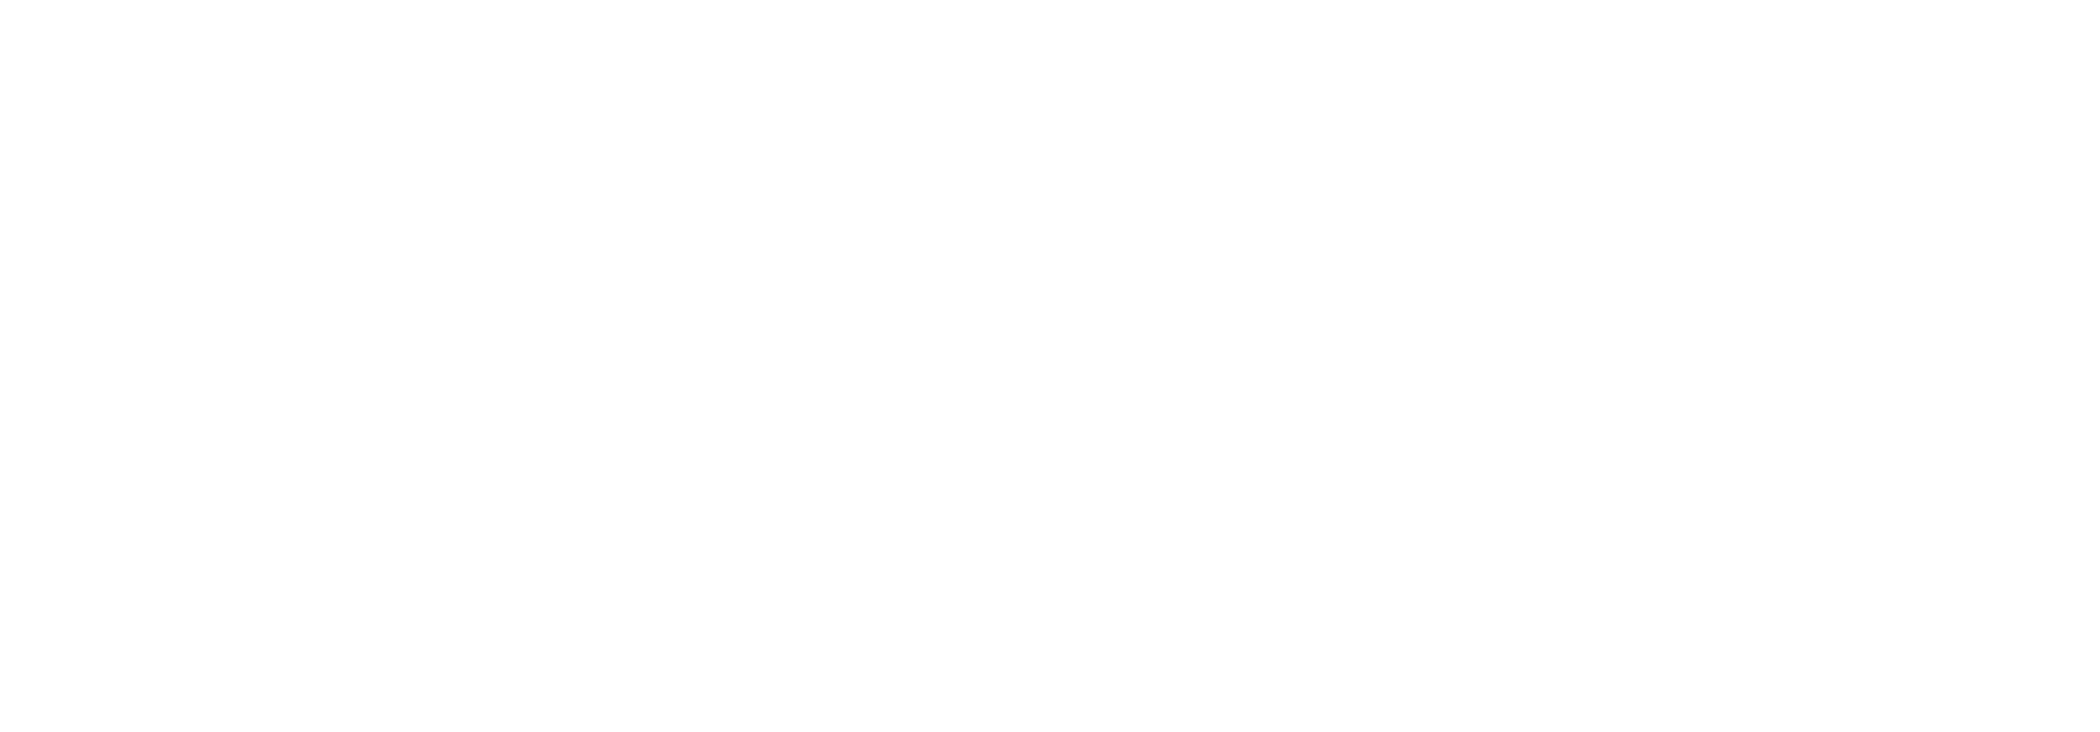 Hartleys logo